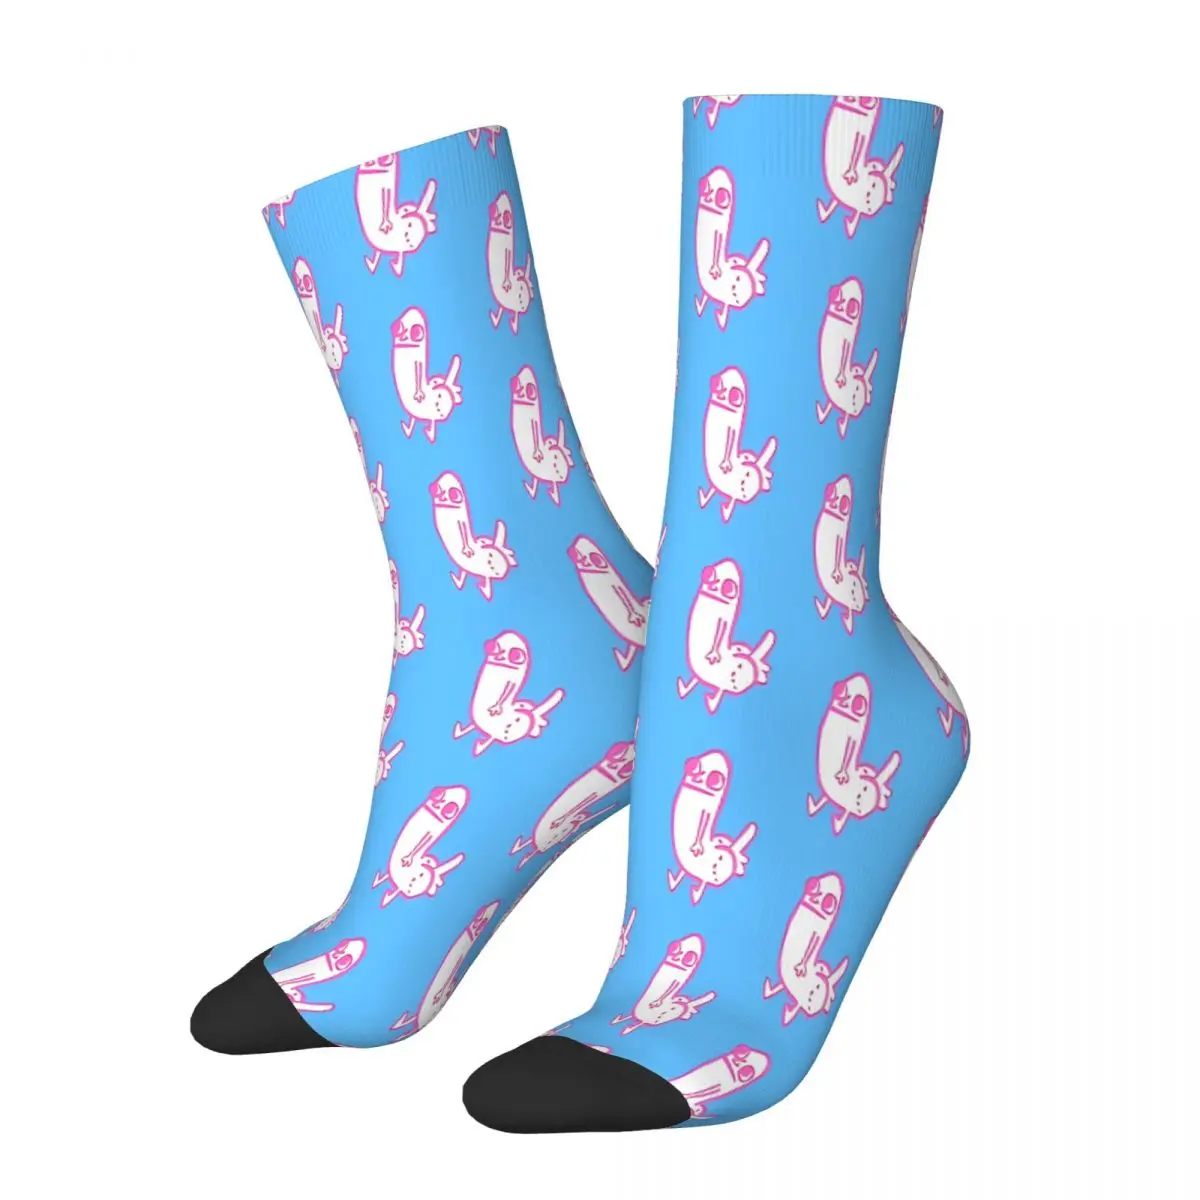 Dick Butt XL In 3D Meme Socks Male Mens Women Spring Stockings Polyester